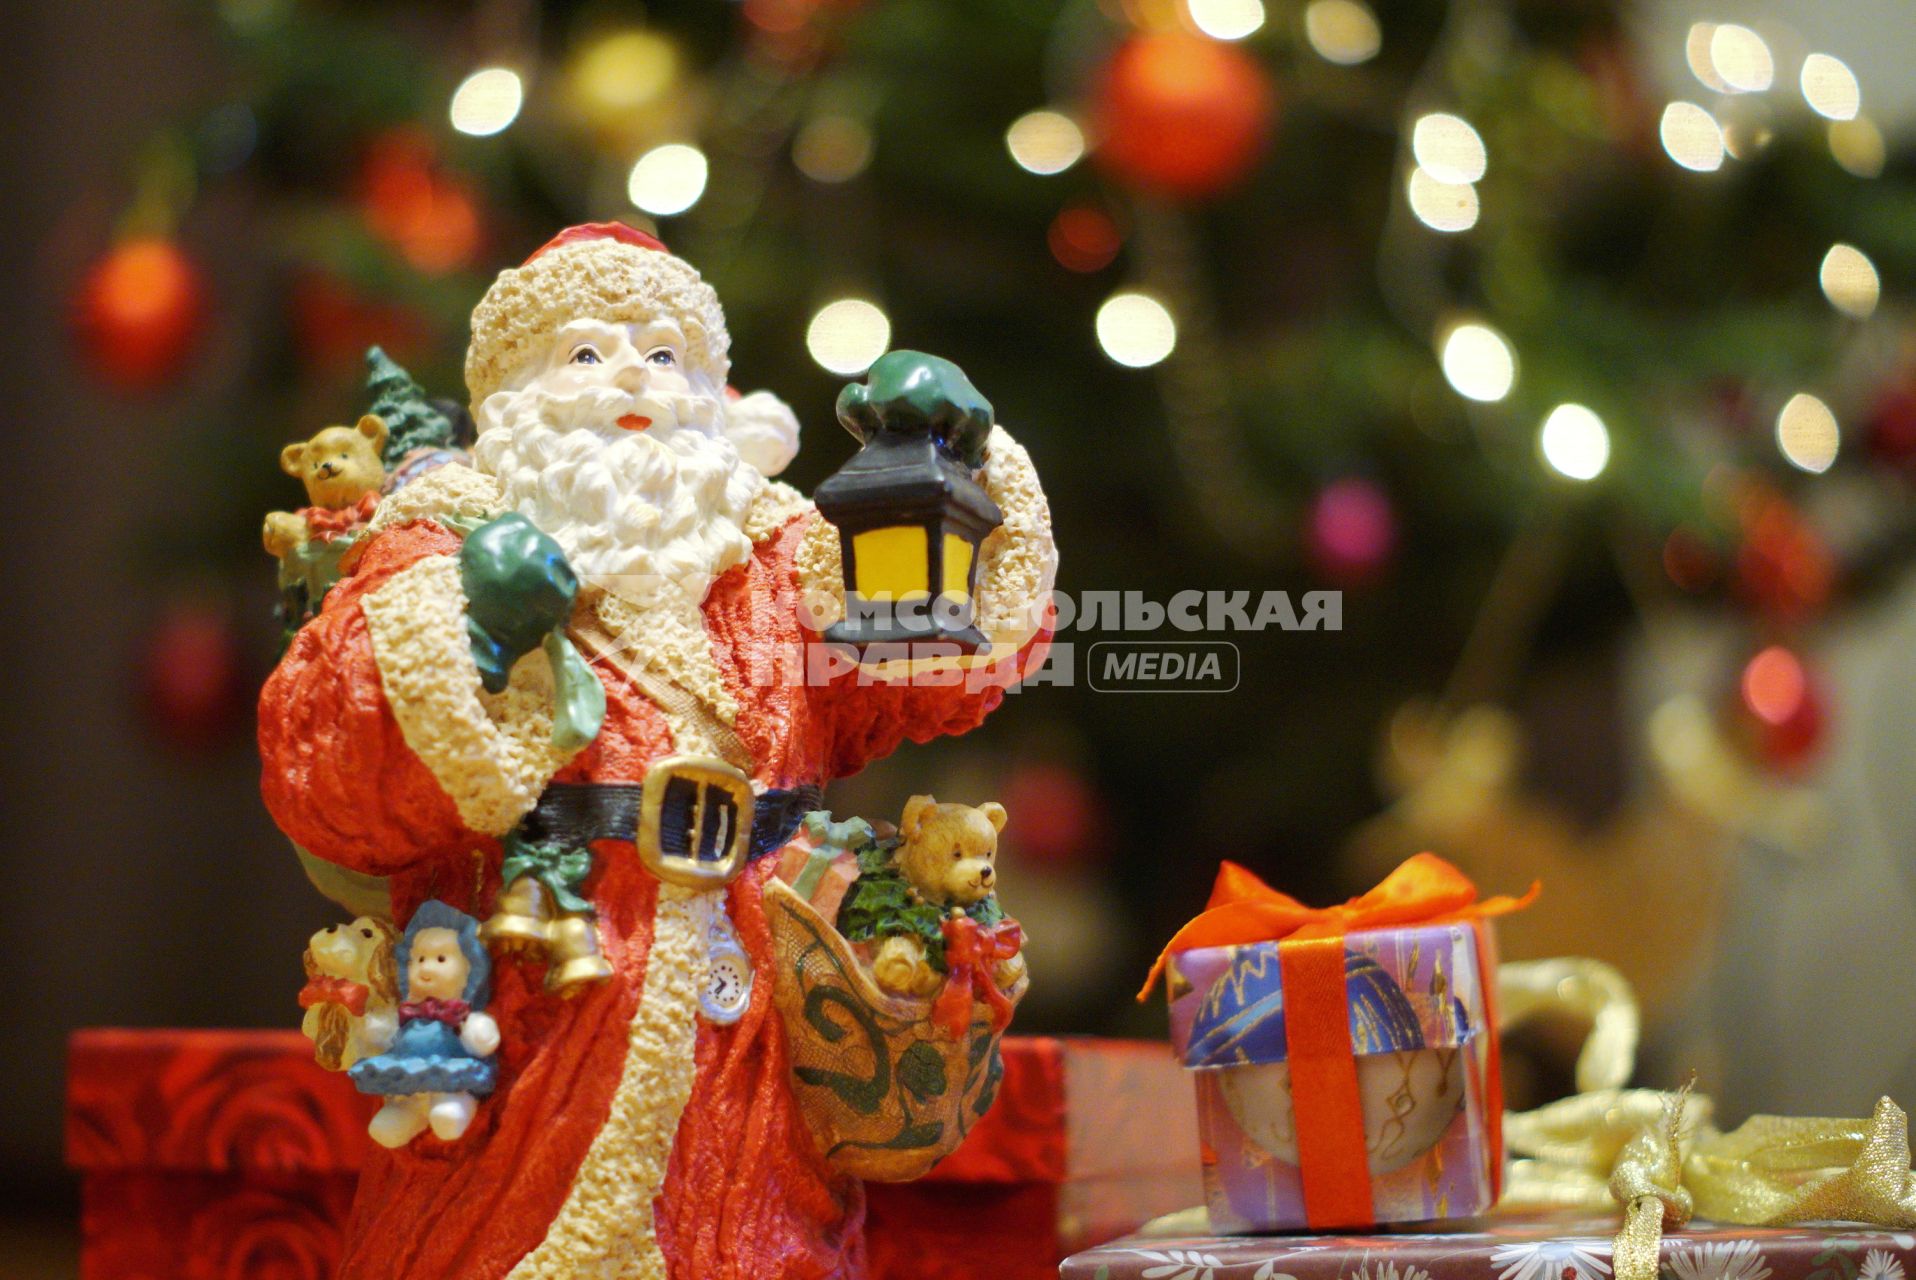 Екатеринбург. Игрушечный дед мороз с коробками с подарками у новогодней елки